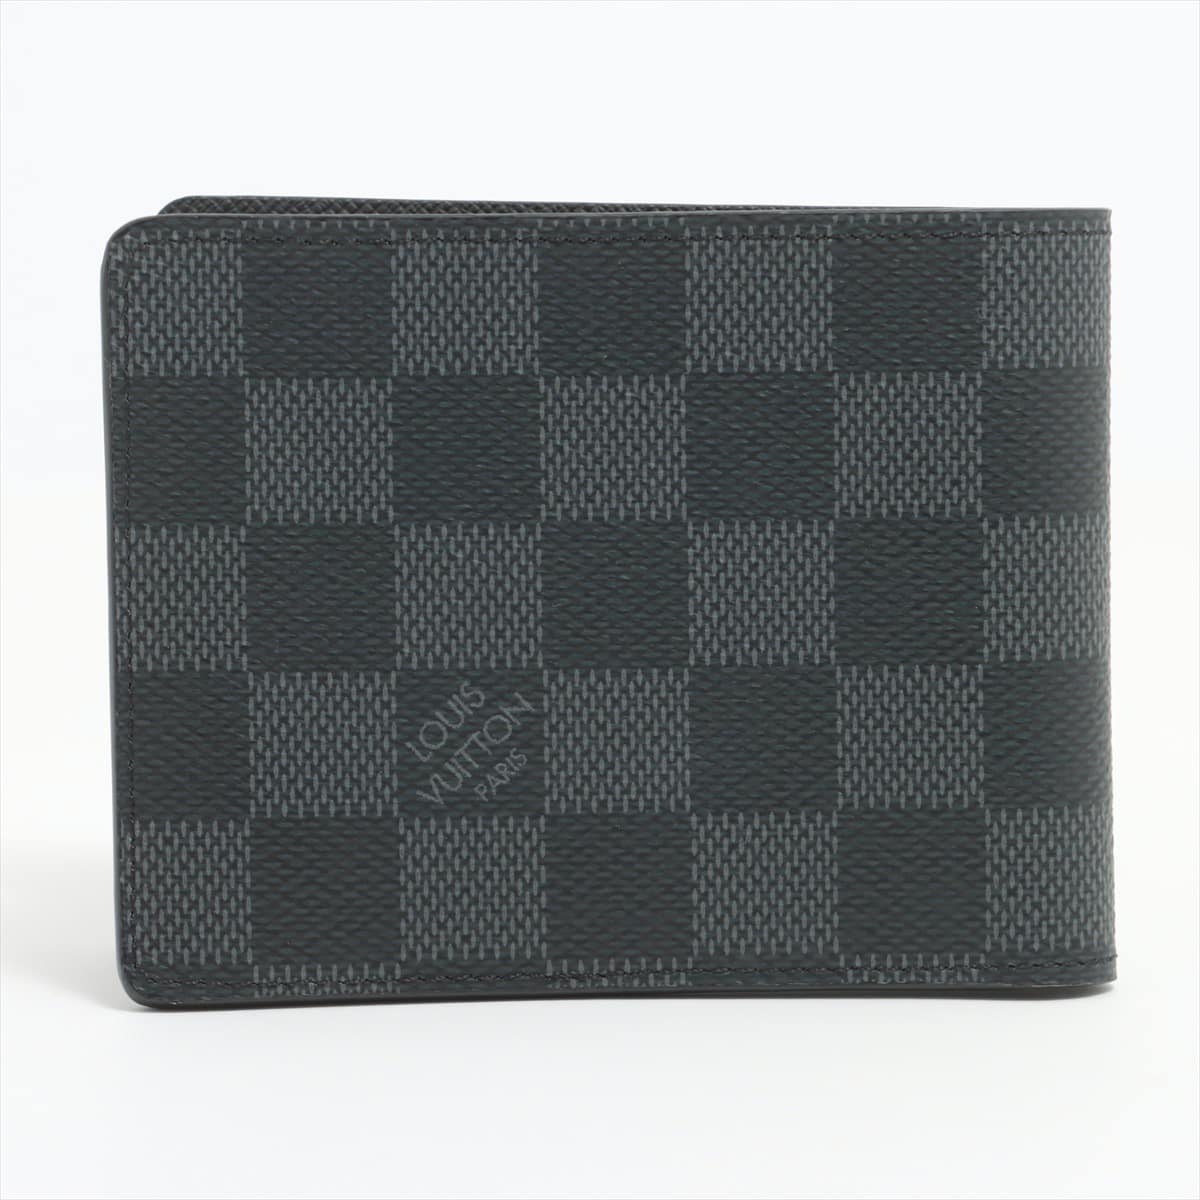 ルイヴィトン ダミエ･グラフィット ポルトフォイユ･スレンダー N63261 ブラック 二つ折り財布